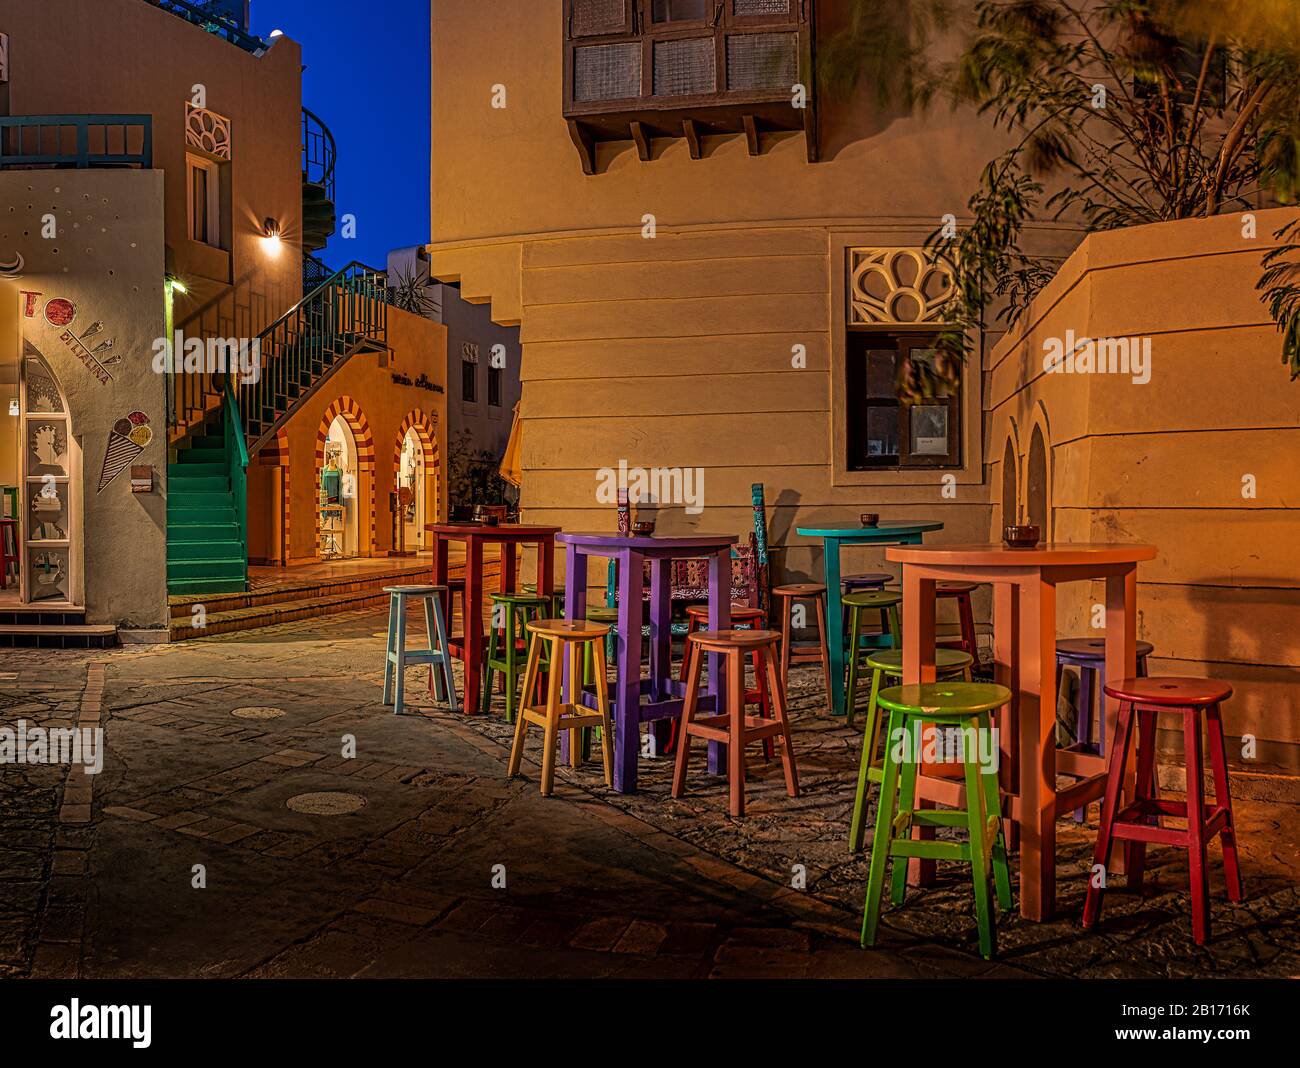 Café-bar avec tables et chaises colorées illuminées la nuit sur une petite place dans la ville de el Gouna, Egypte, 17 janvier 2020 Banque D'Images